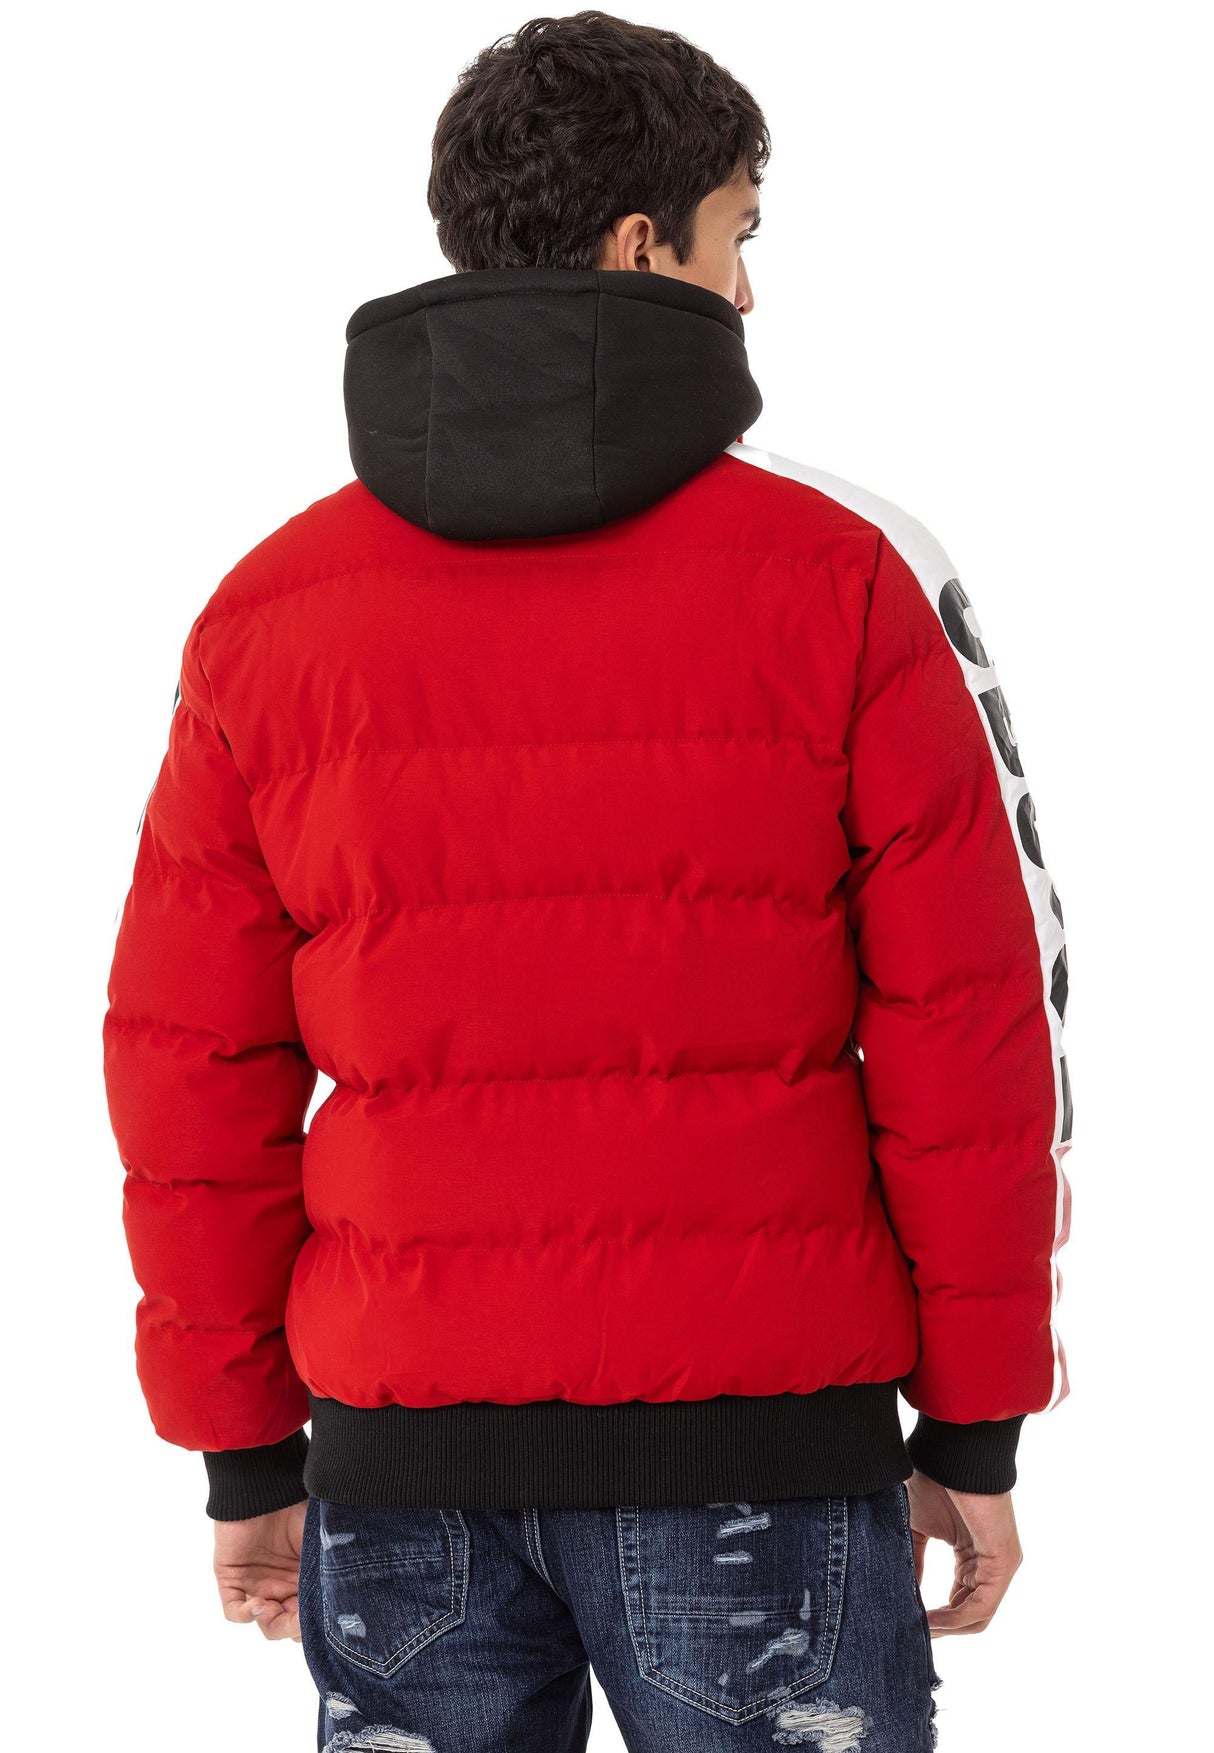 CM222 men's winter jacket